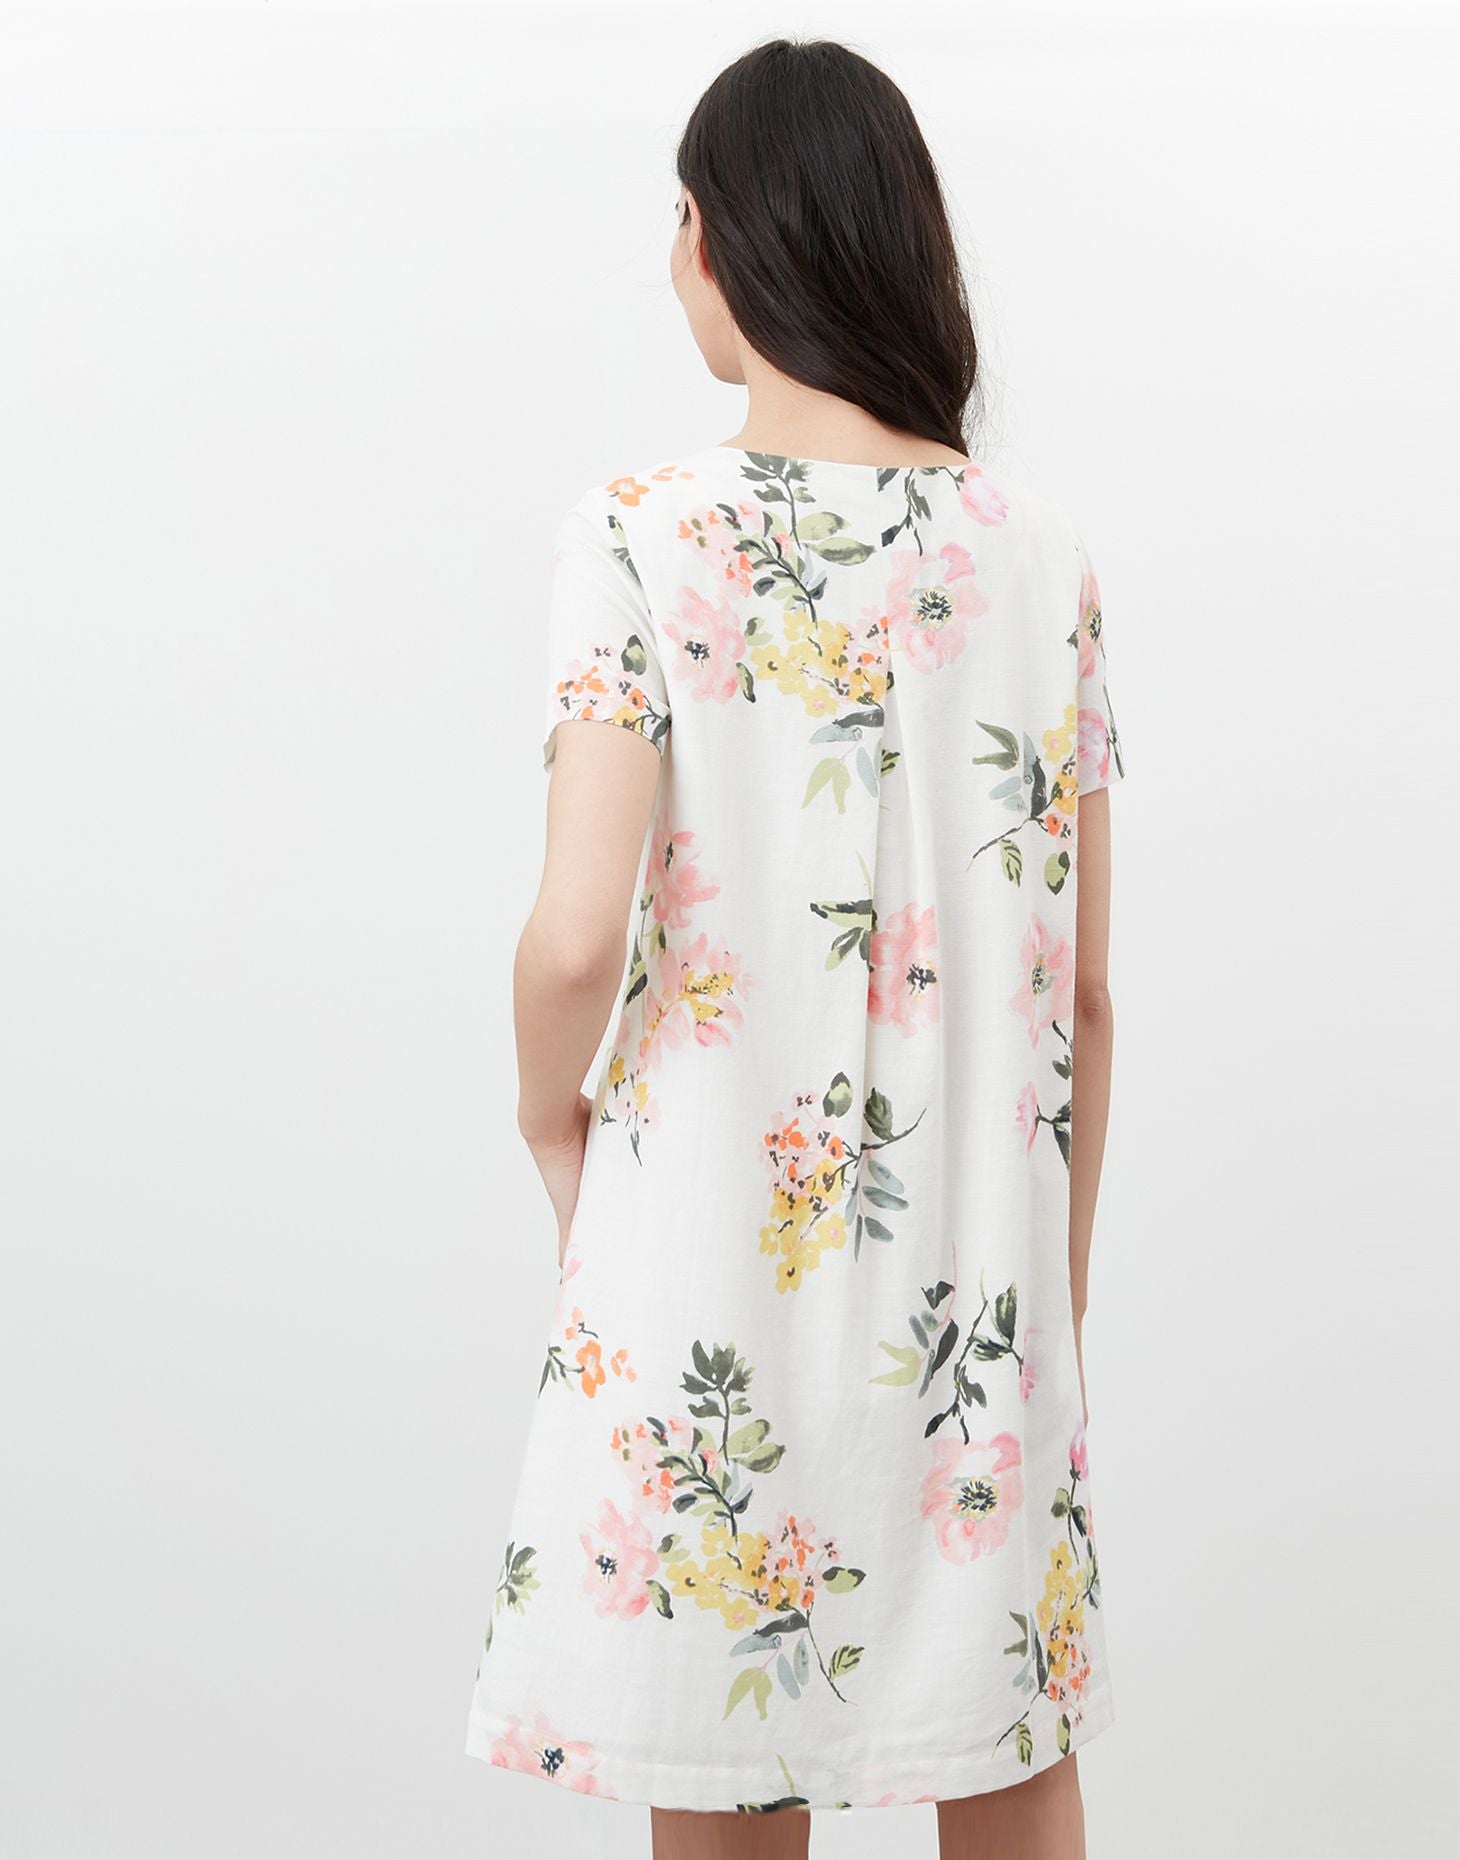 Rosetta Print Shift Dress in Cream floral